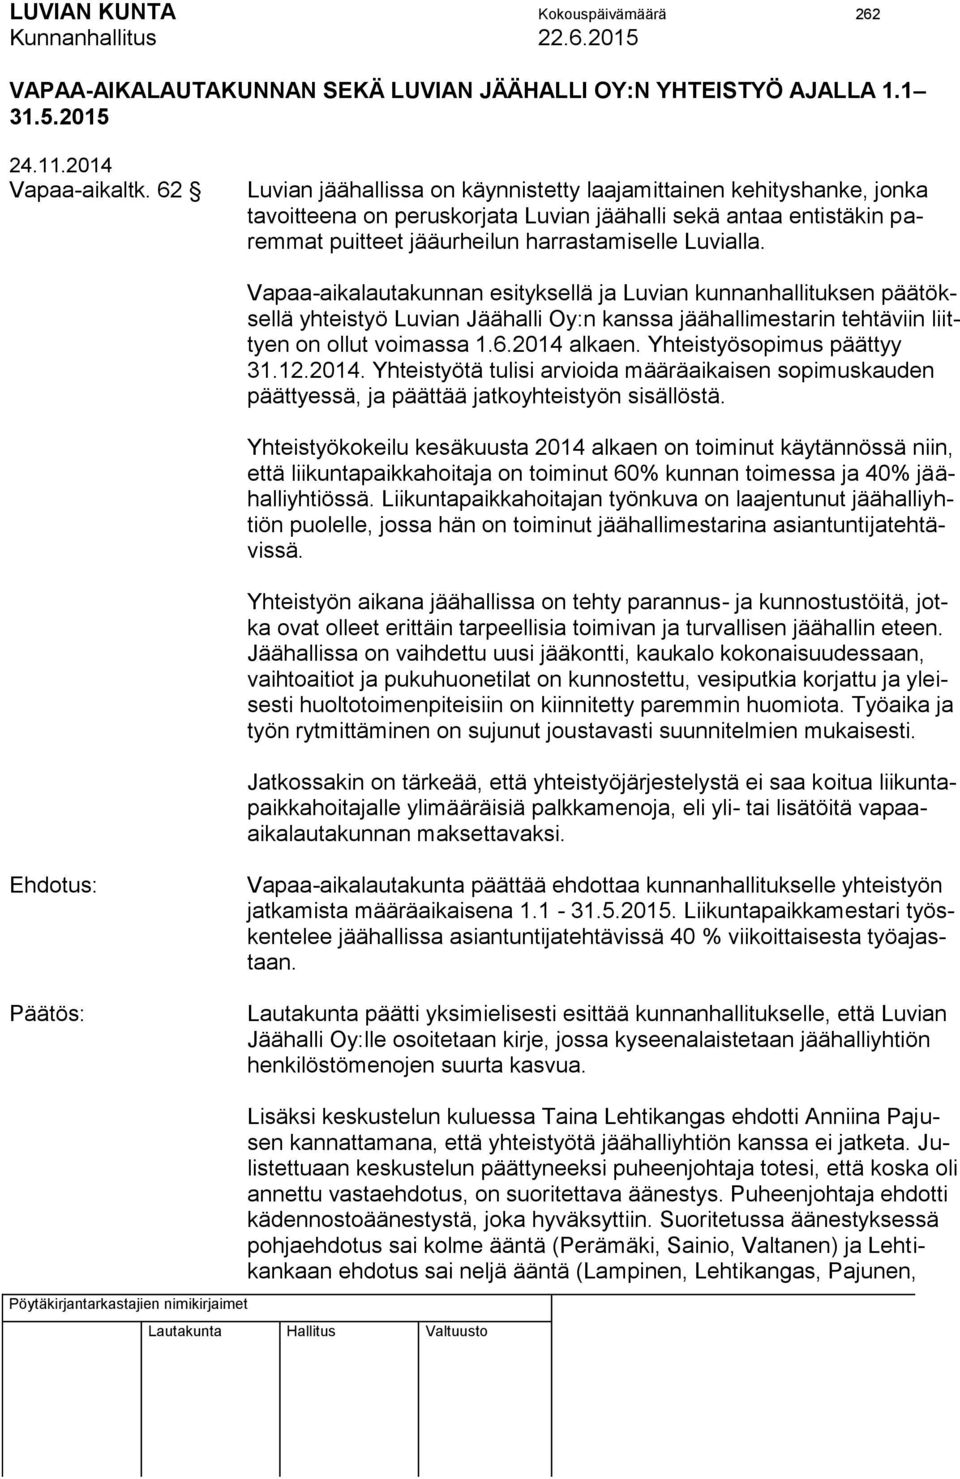 Vapaa-aikalautakunnan esityksellä ja Luvian kunnanhallituksen päätöksellä yhteistyö Luvian Jäähalli Oy:n kanssa jäähallimestarin tehtäviin liittyen on ollut voimassa 1.6.2014 alkaen.